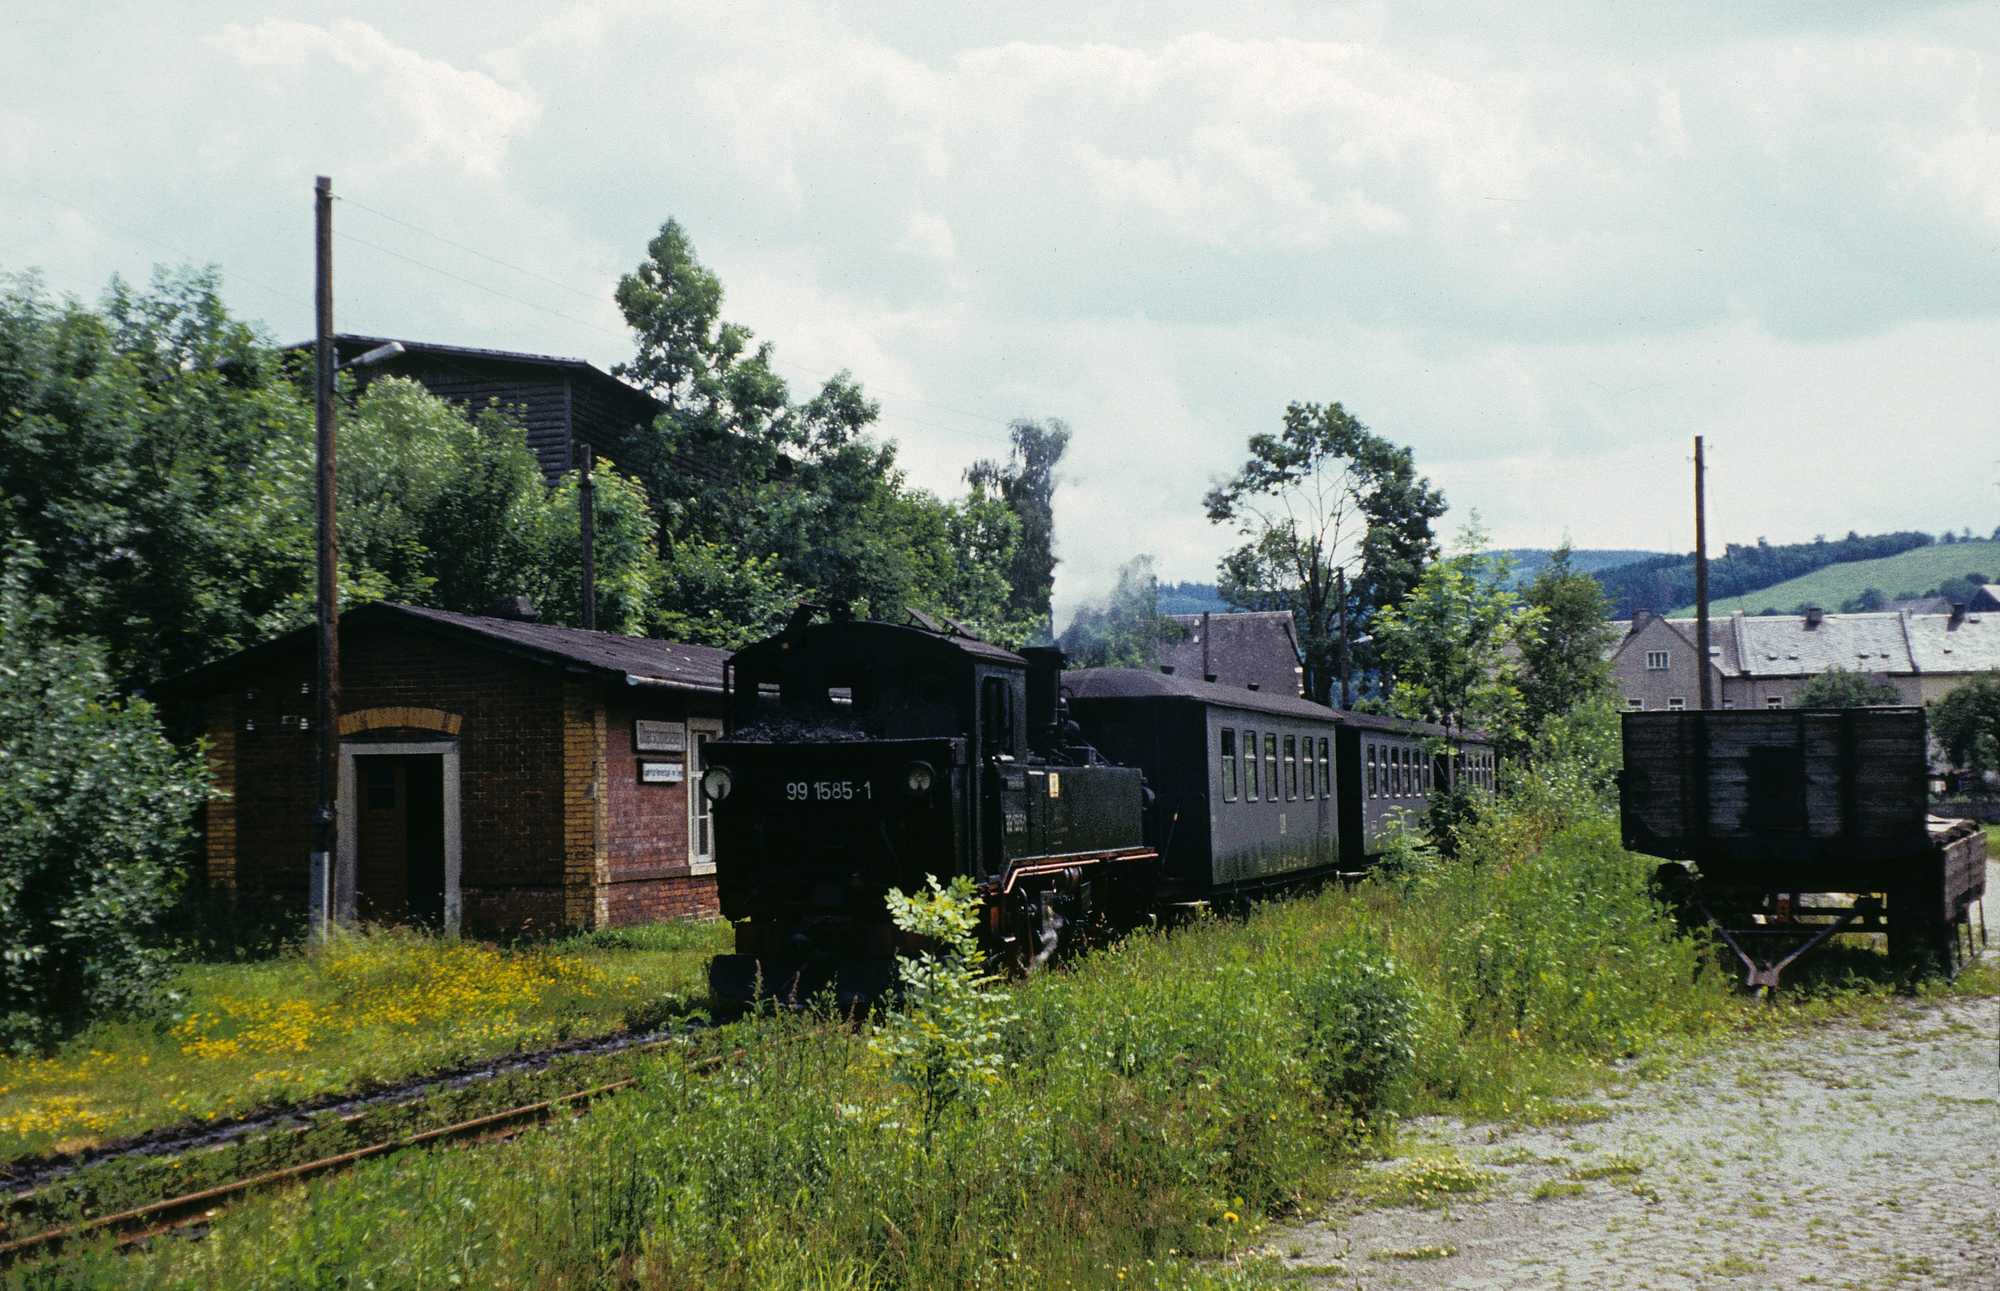 Ein kurzer aus IV K 99 1585-1 und drei Reko-Klassen gebildeter Zug in Fahrtrichtung Wolkenstein am Stationsgebäude Oberschmiedeberg.